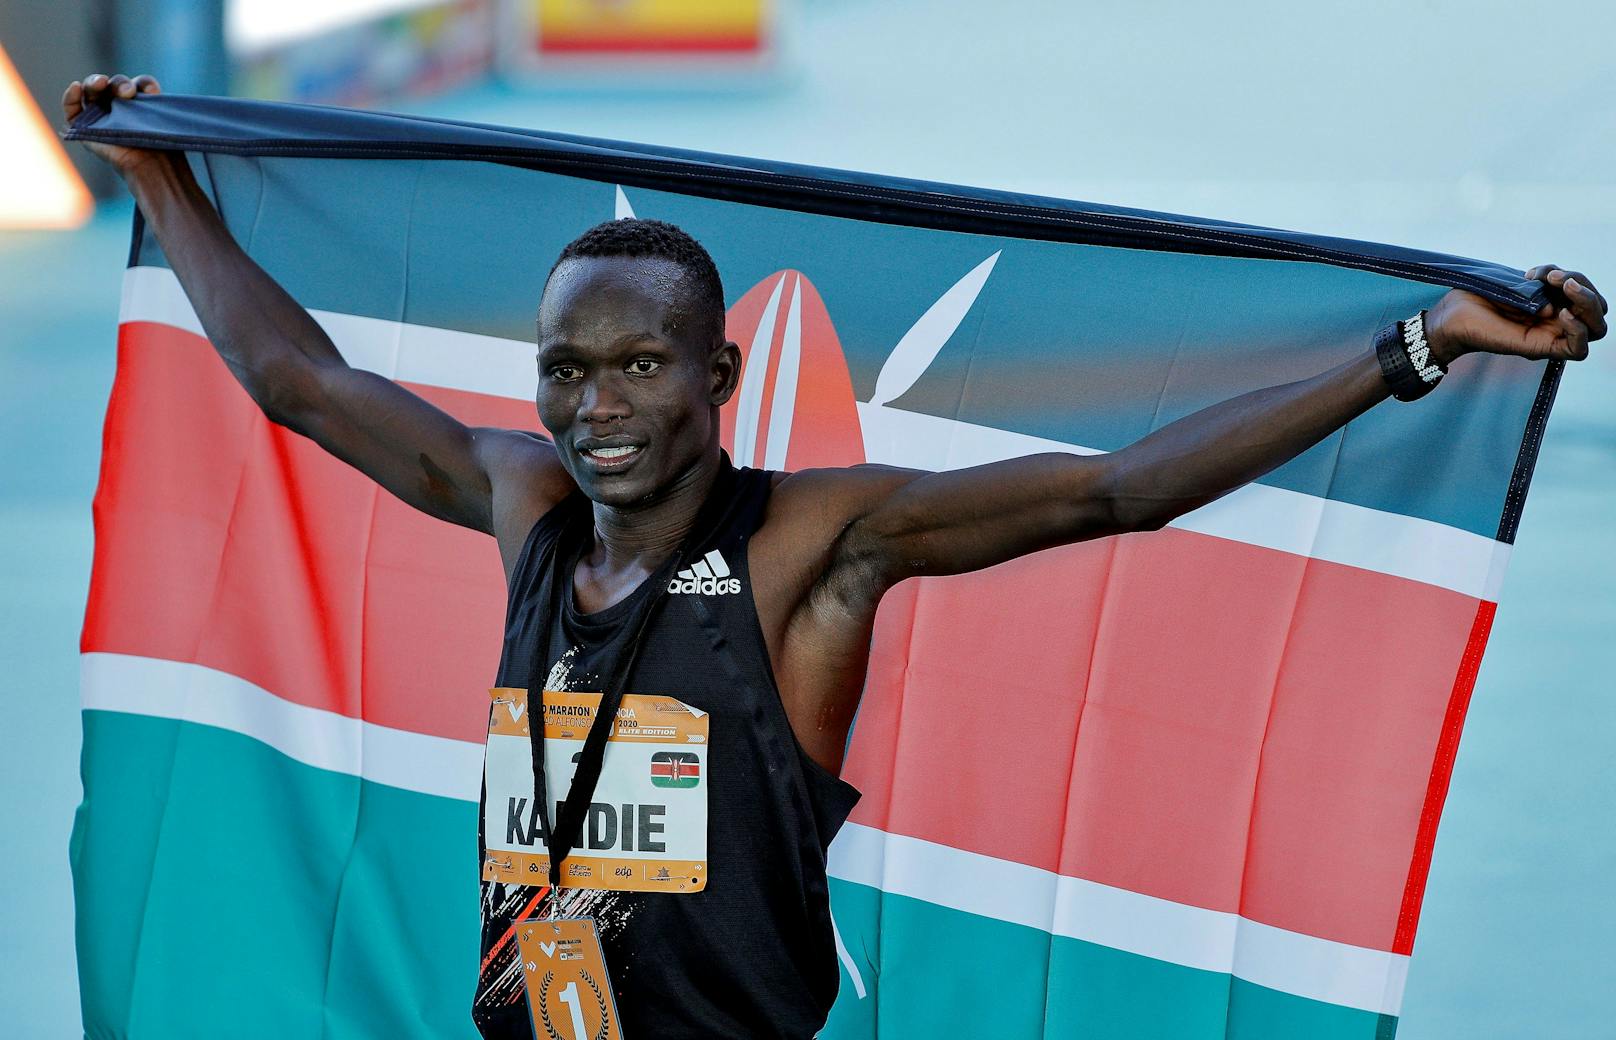 Kibiwott Kandie: Halbmarathon als erster Mensch unter 58 Minuten